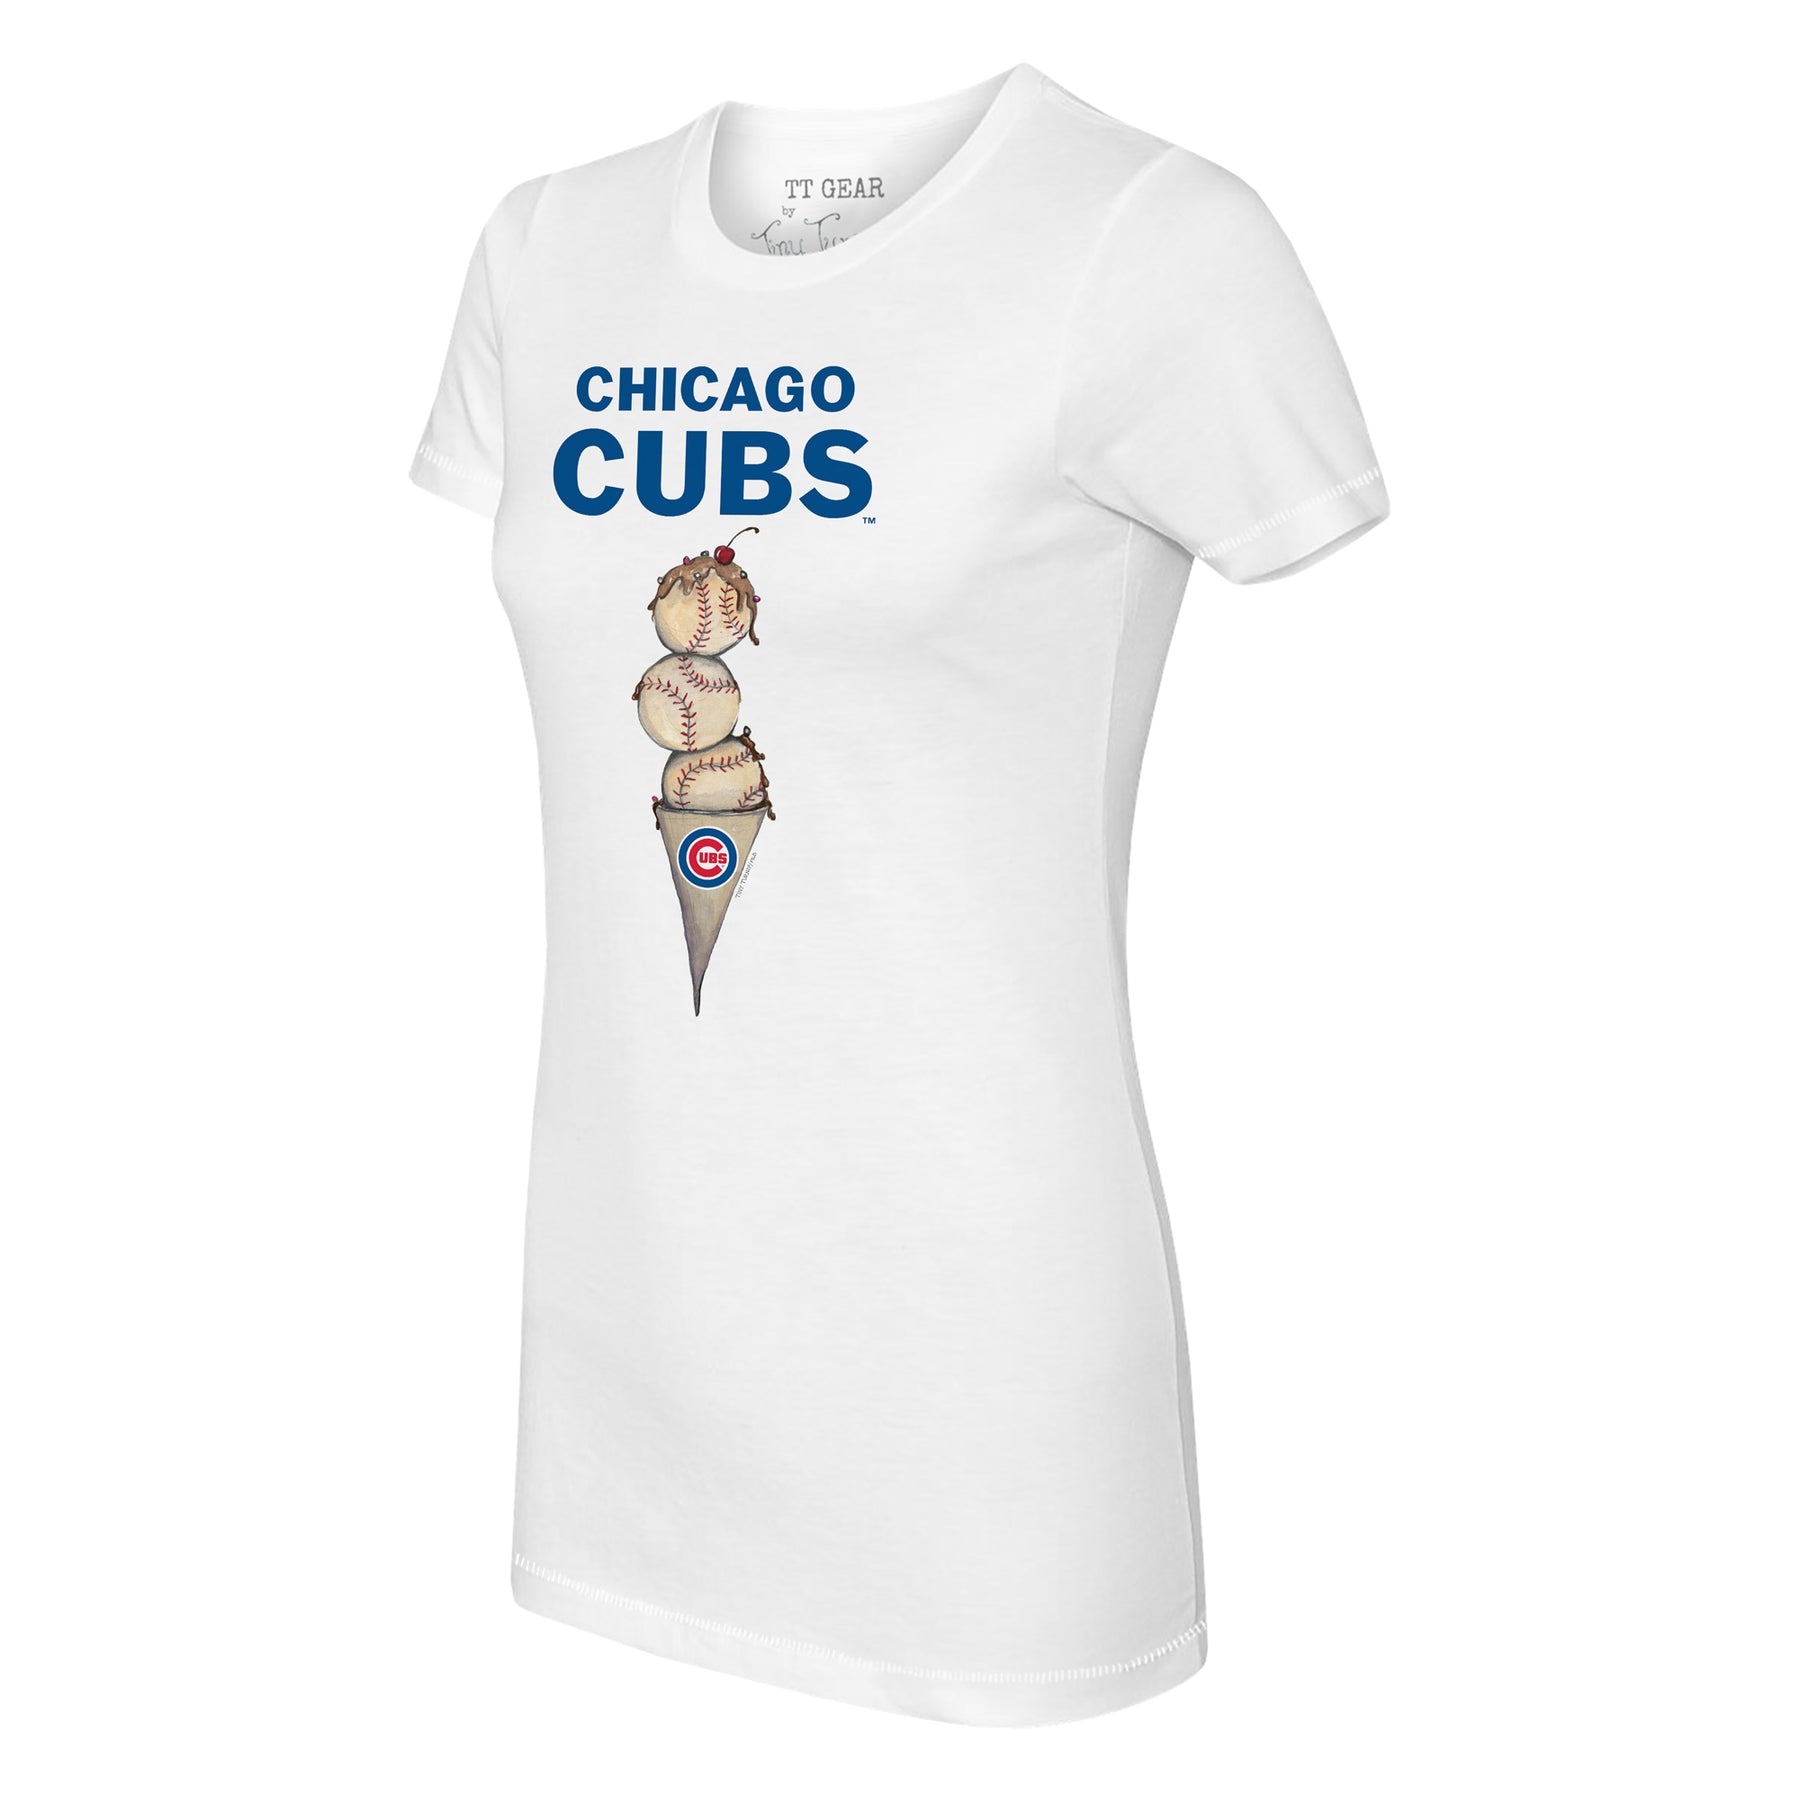 chicago cubs t shirt women's